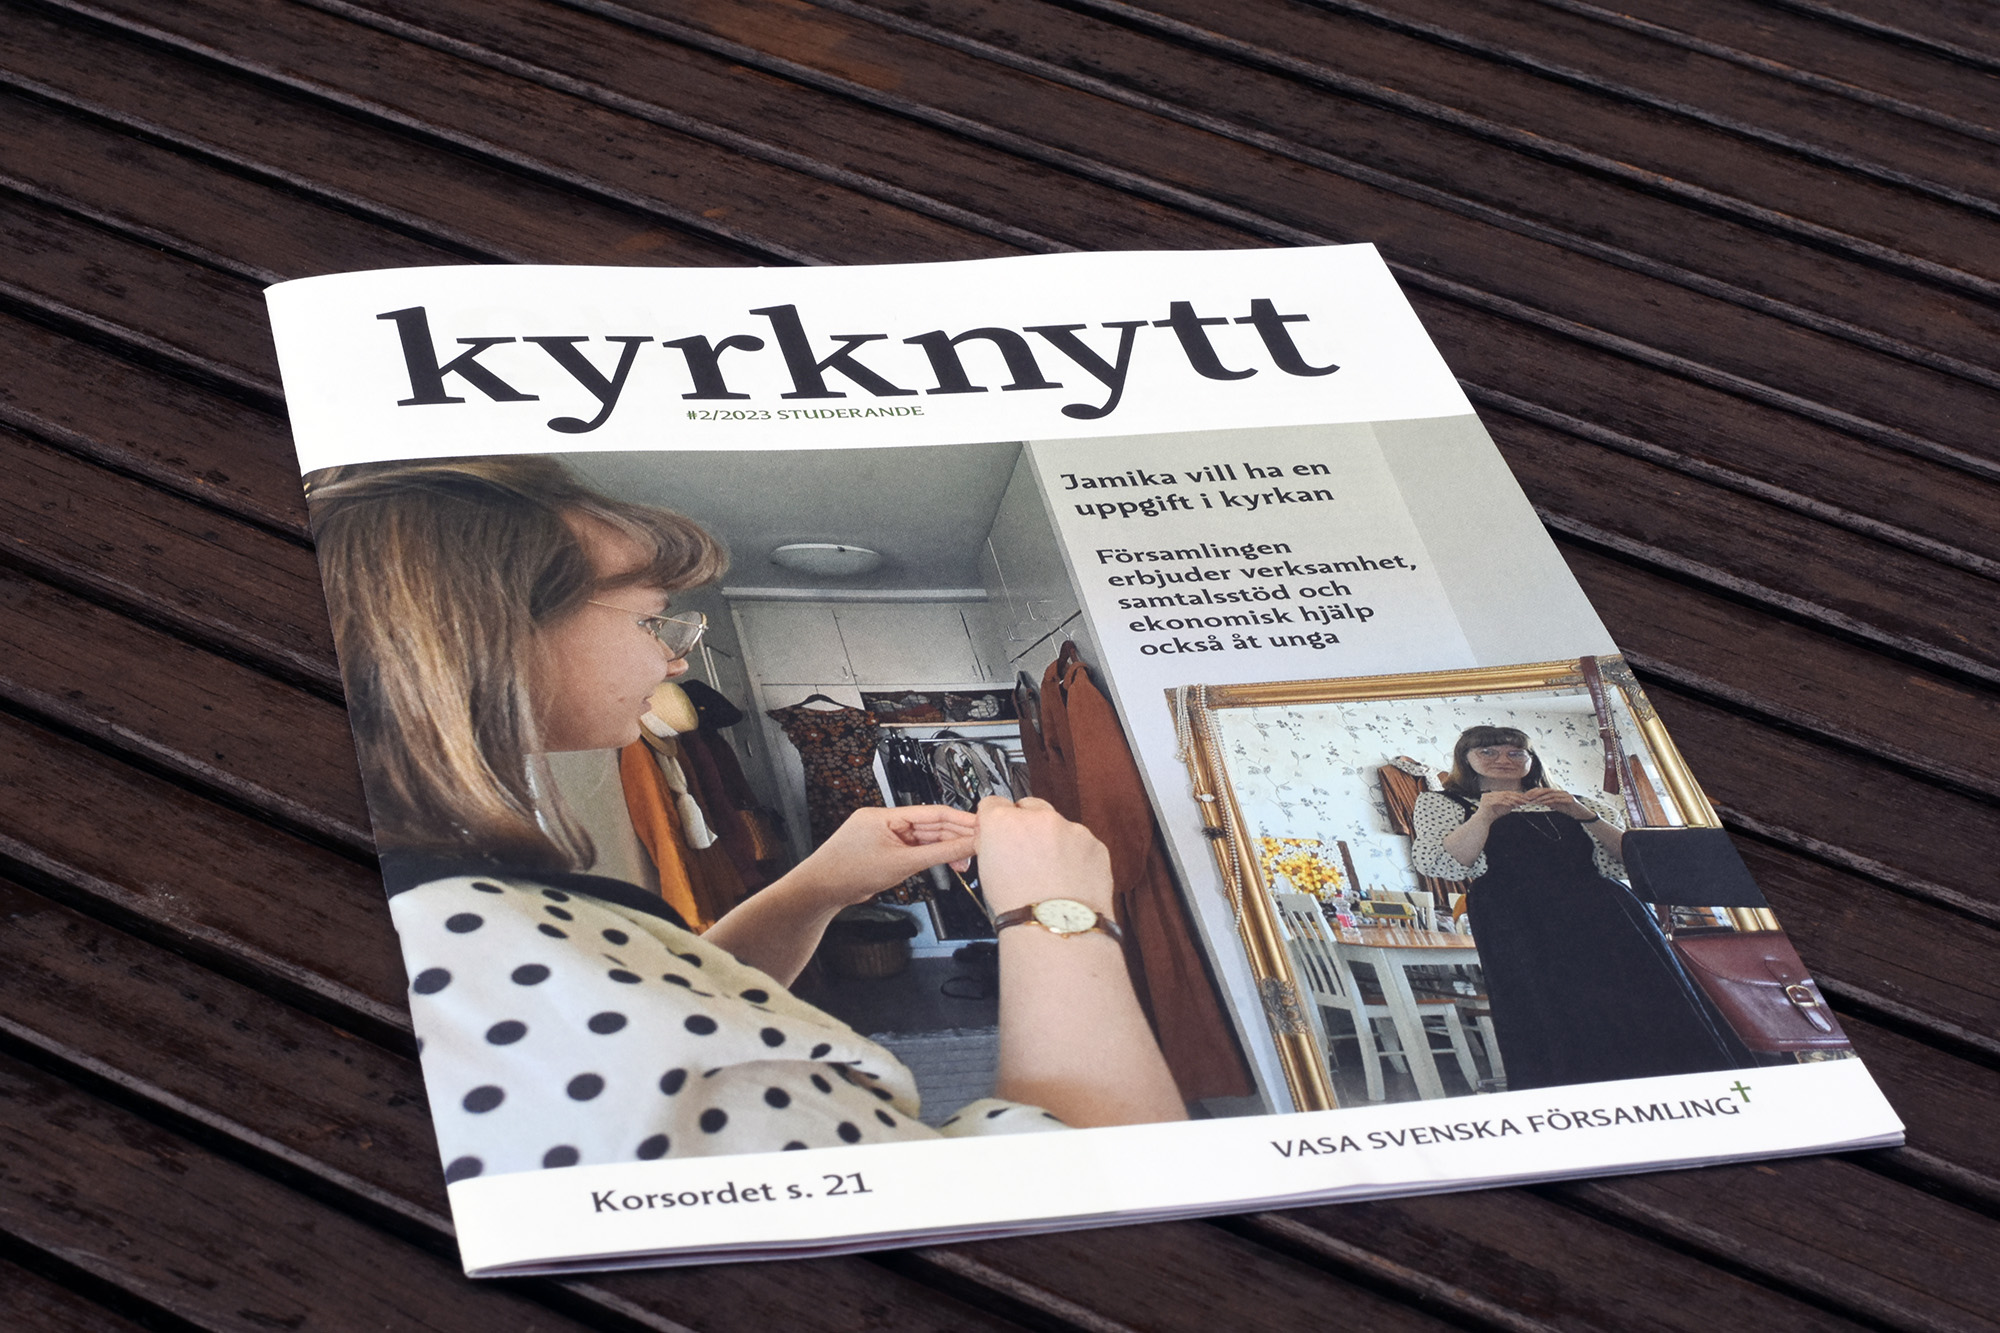 Tidning med titeln Kyrknytt på ett bord.